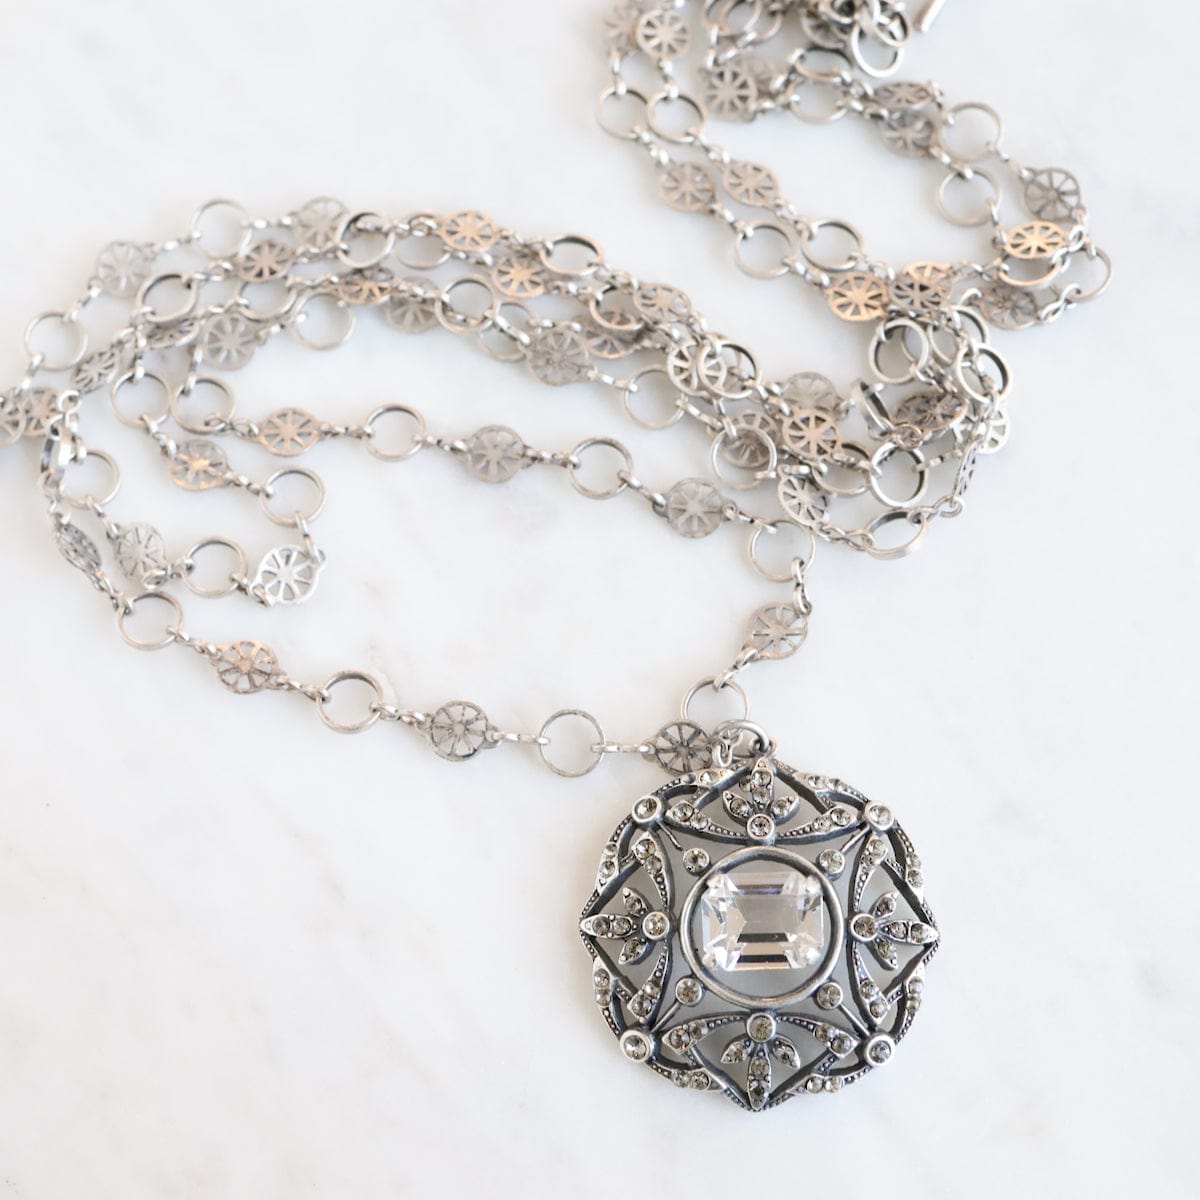 NKL-JM "Old Silver" Crystal Medallion Necklace